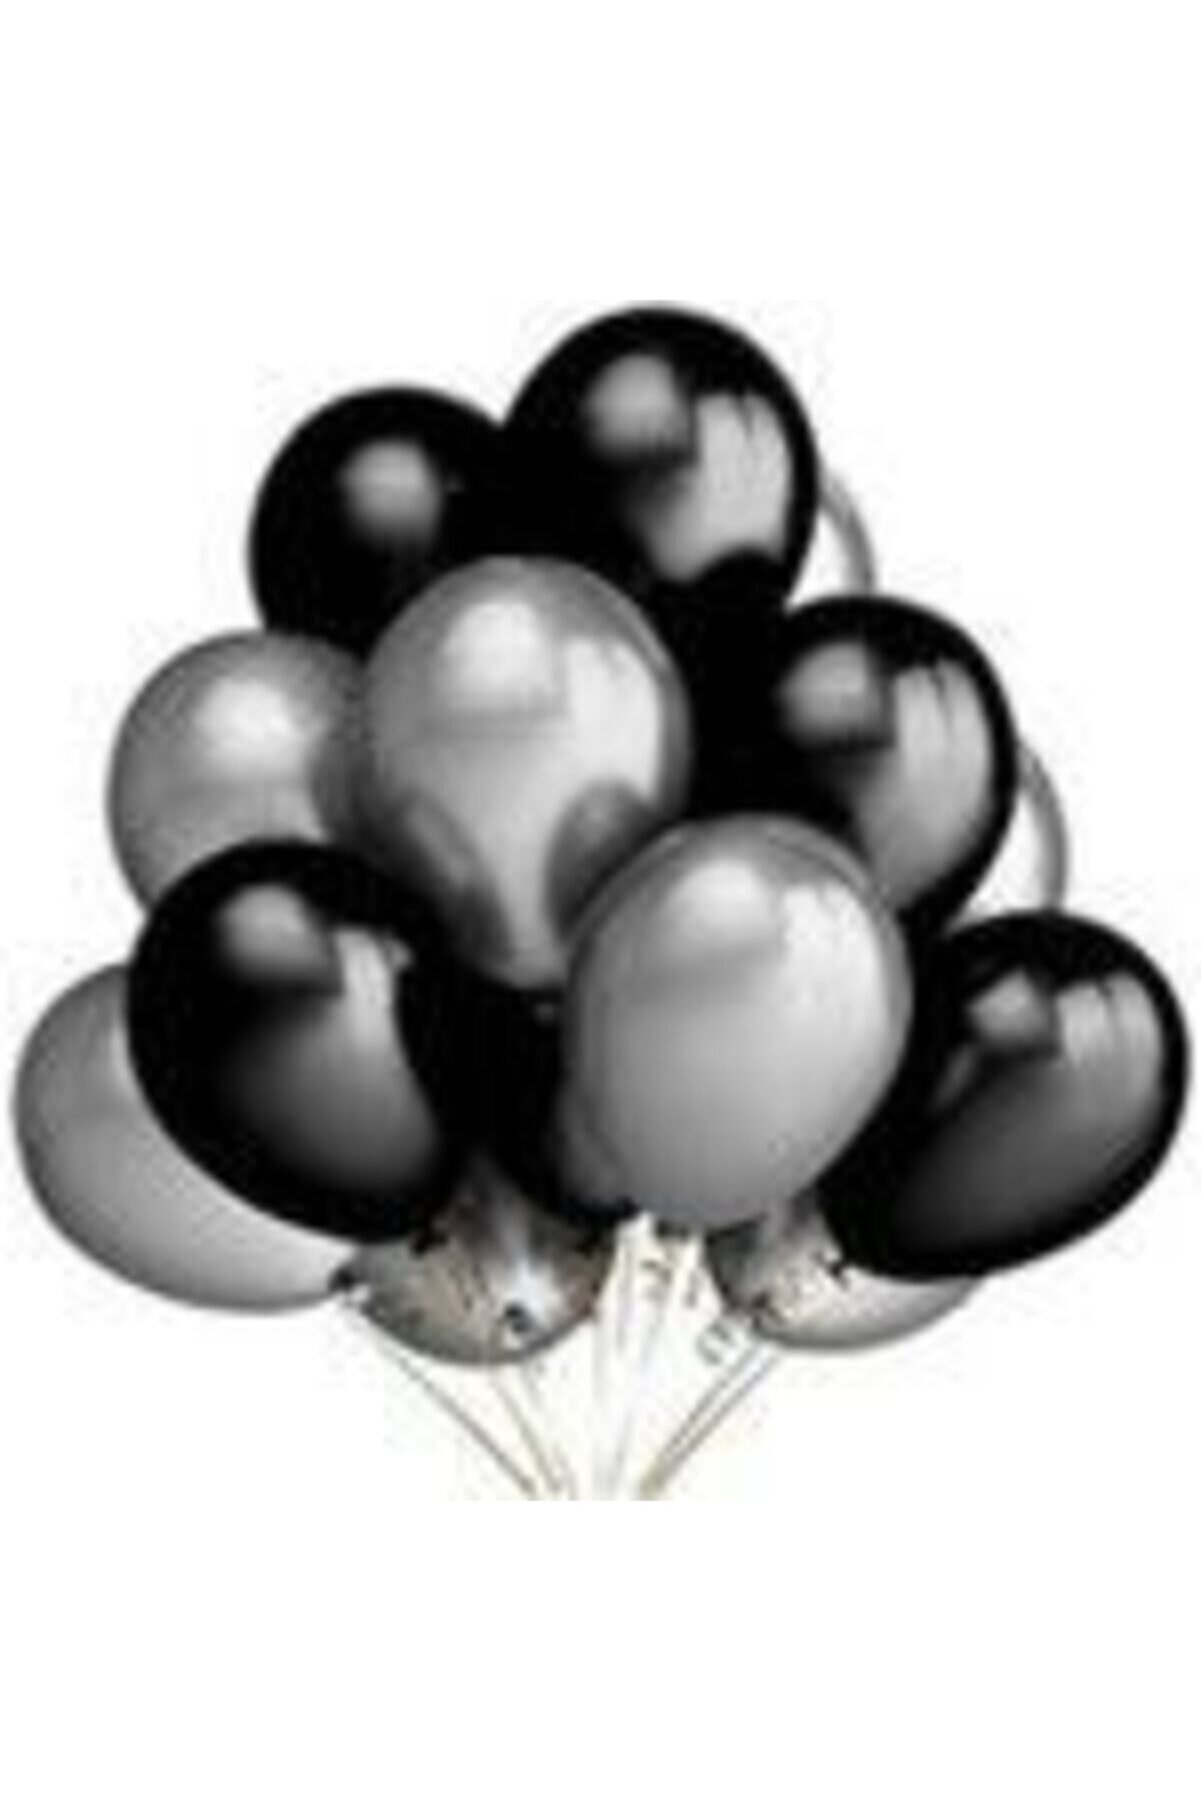 EXİZTİCARET Metalik Sedefli Balon 50 Adet Helyum Gazına Uyumlu Uçan Balon